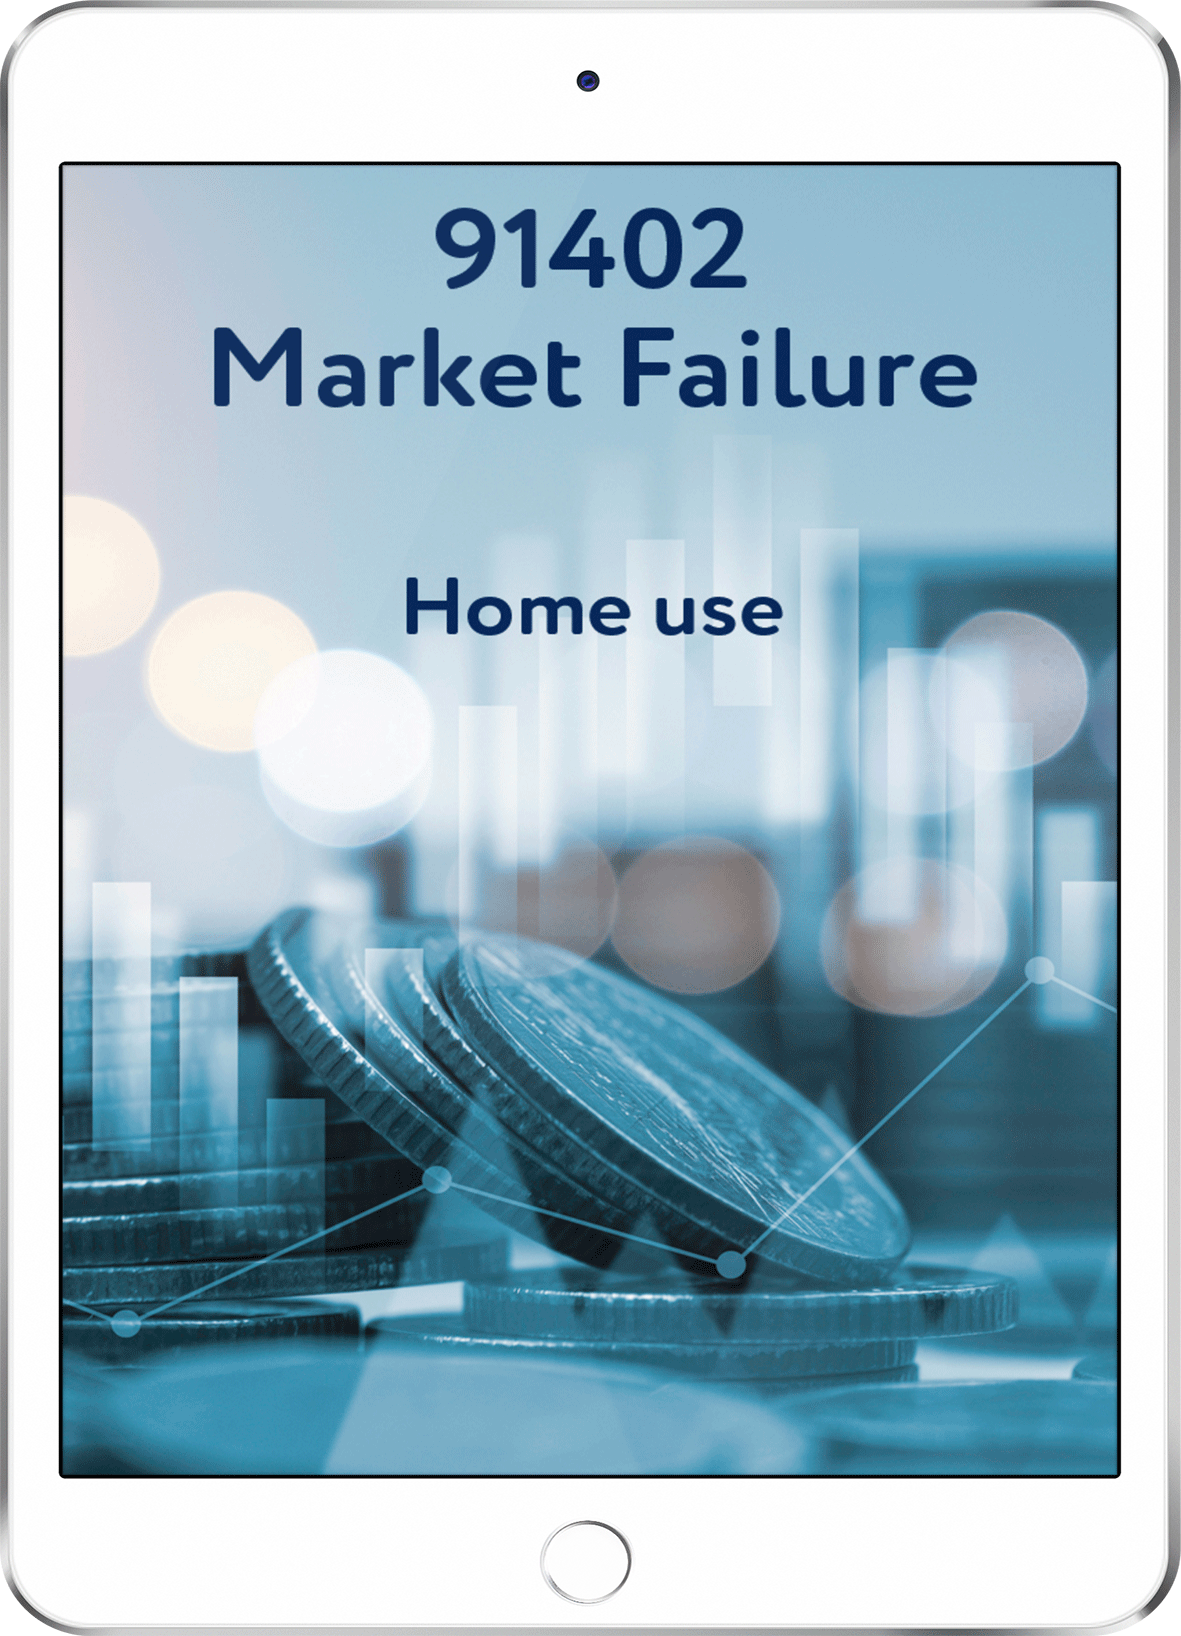 91402 Market Failure - Home Use